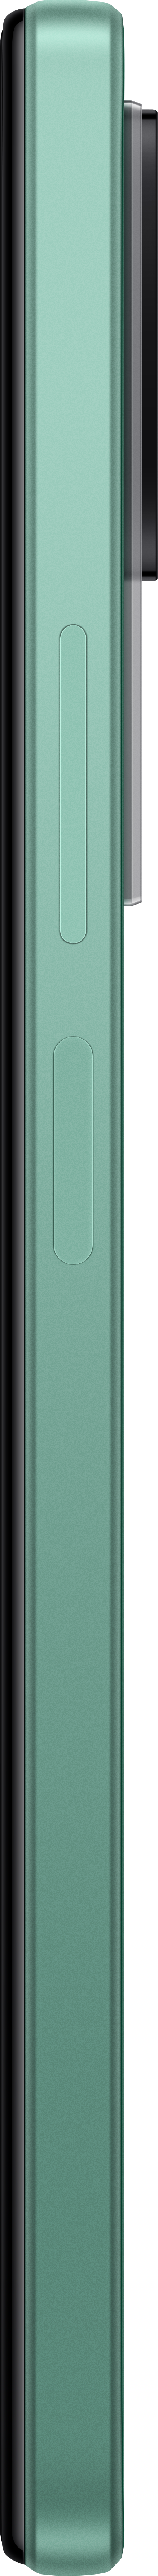 XIAOMI F4 256 GB Nebula Dual SIM Green